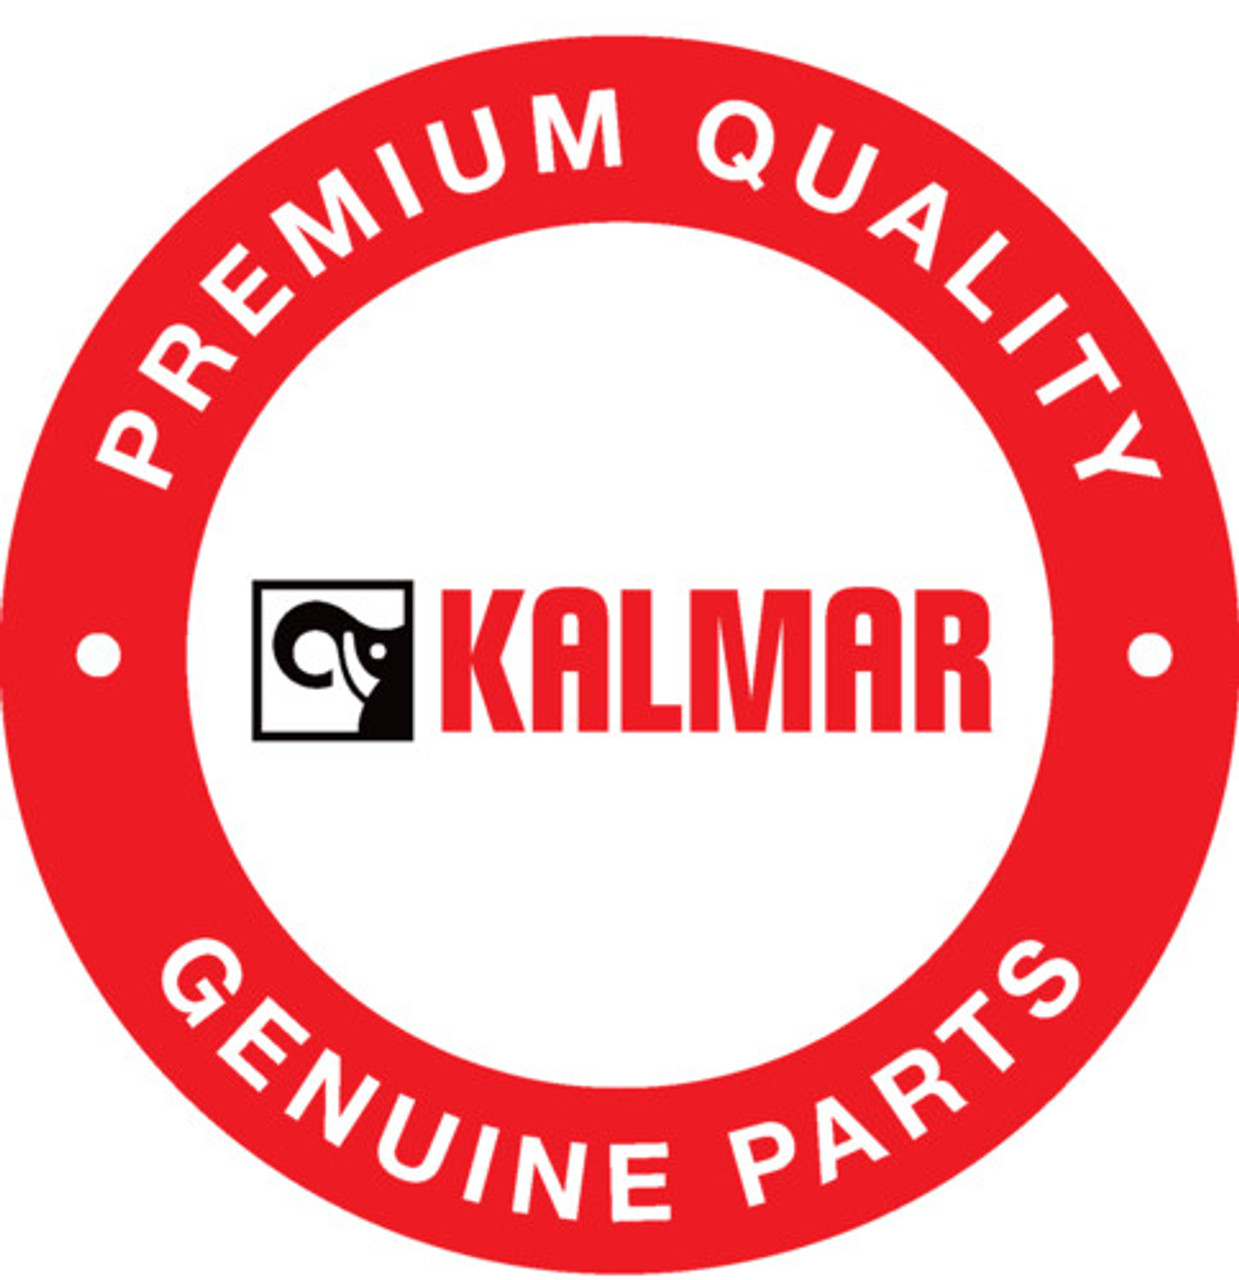 806818624: Kalmar® Counterpiece